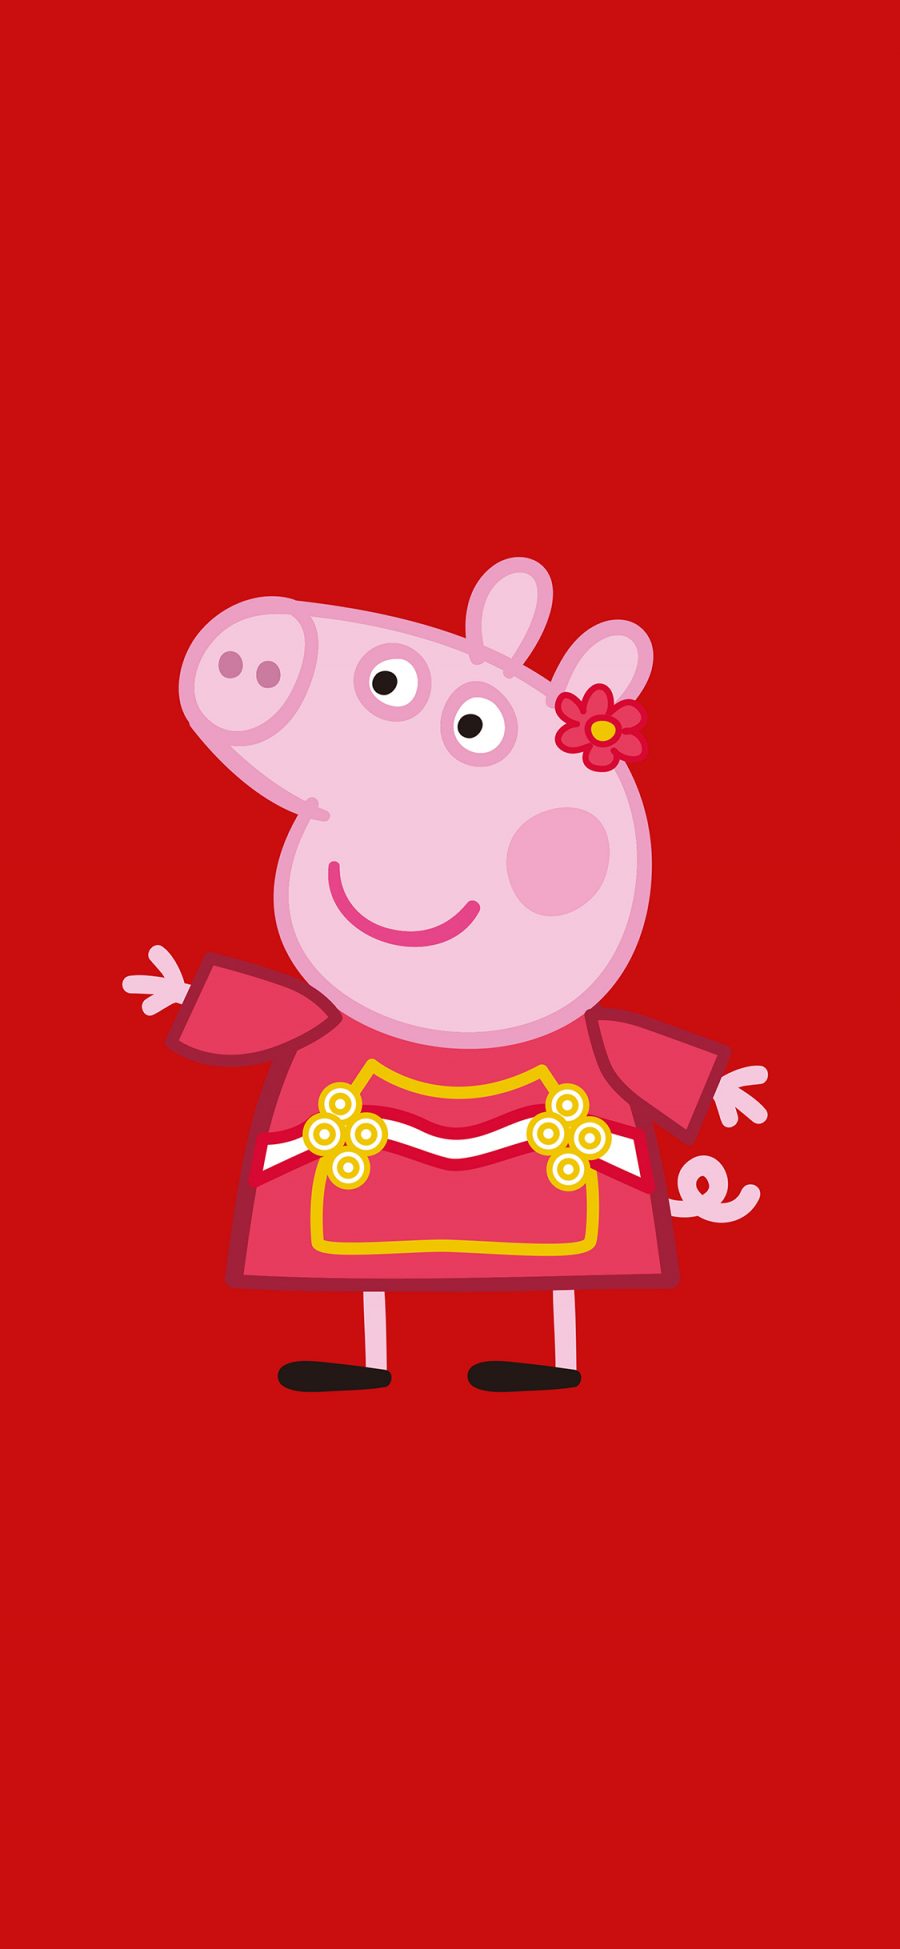 [2436×1125]小猪佩奇 红色 动画 苹果手机动漫壁纸图片